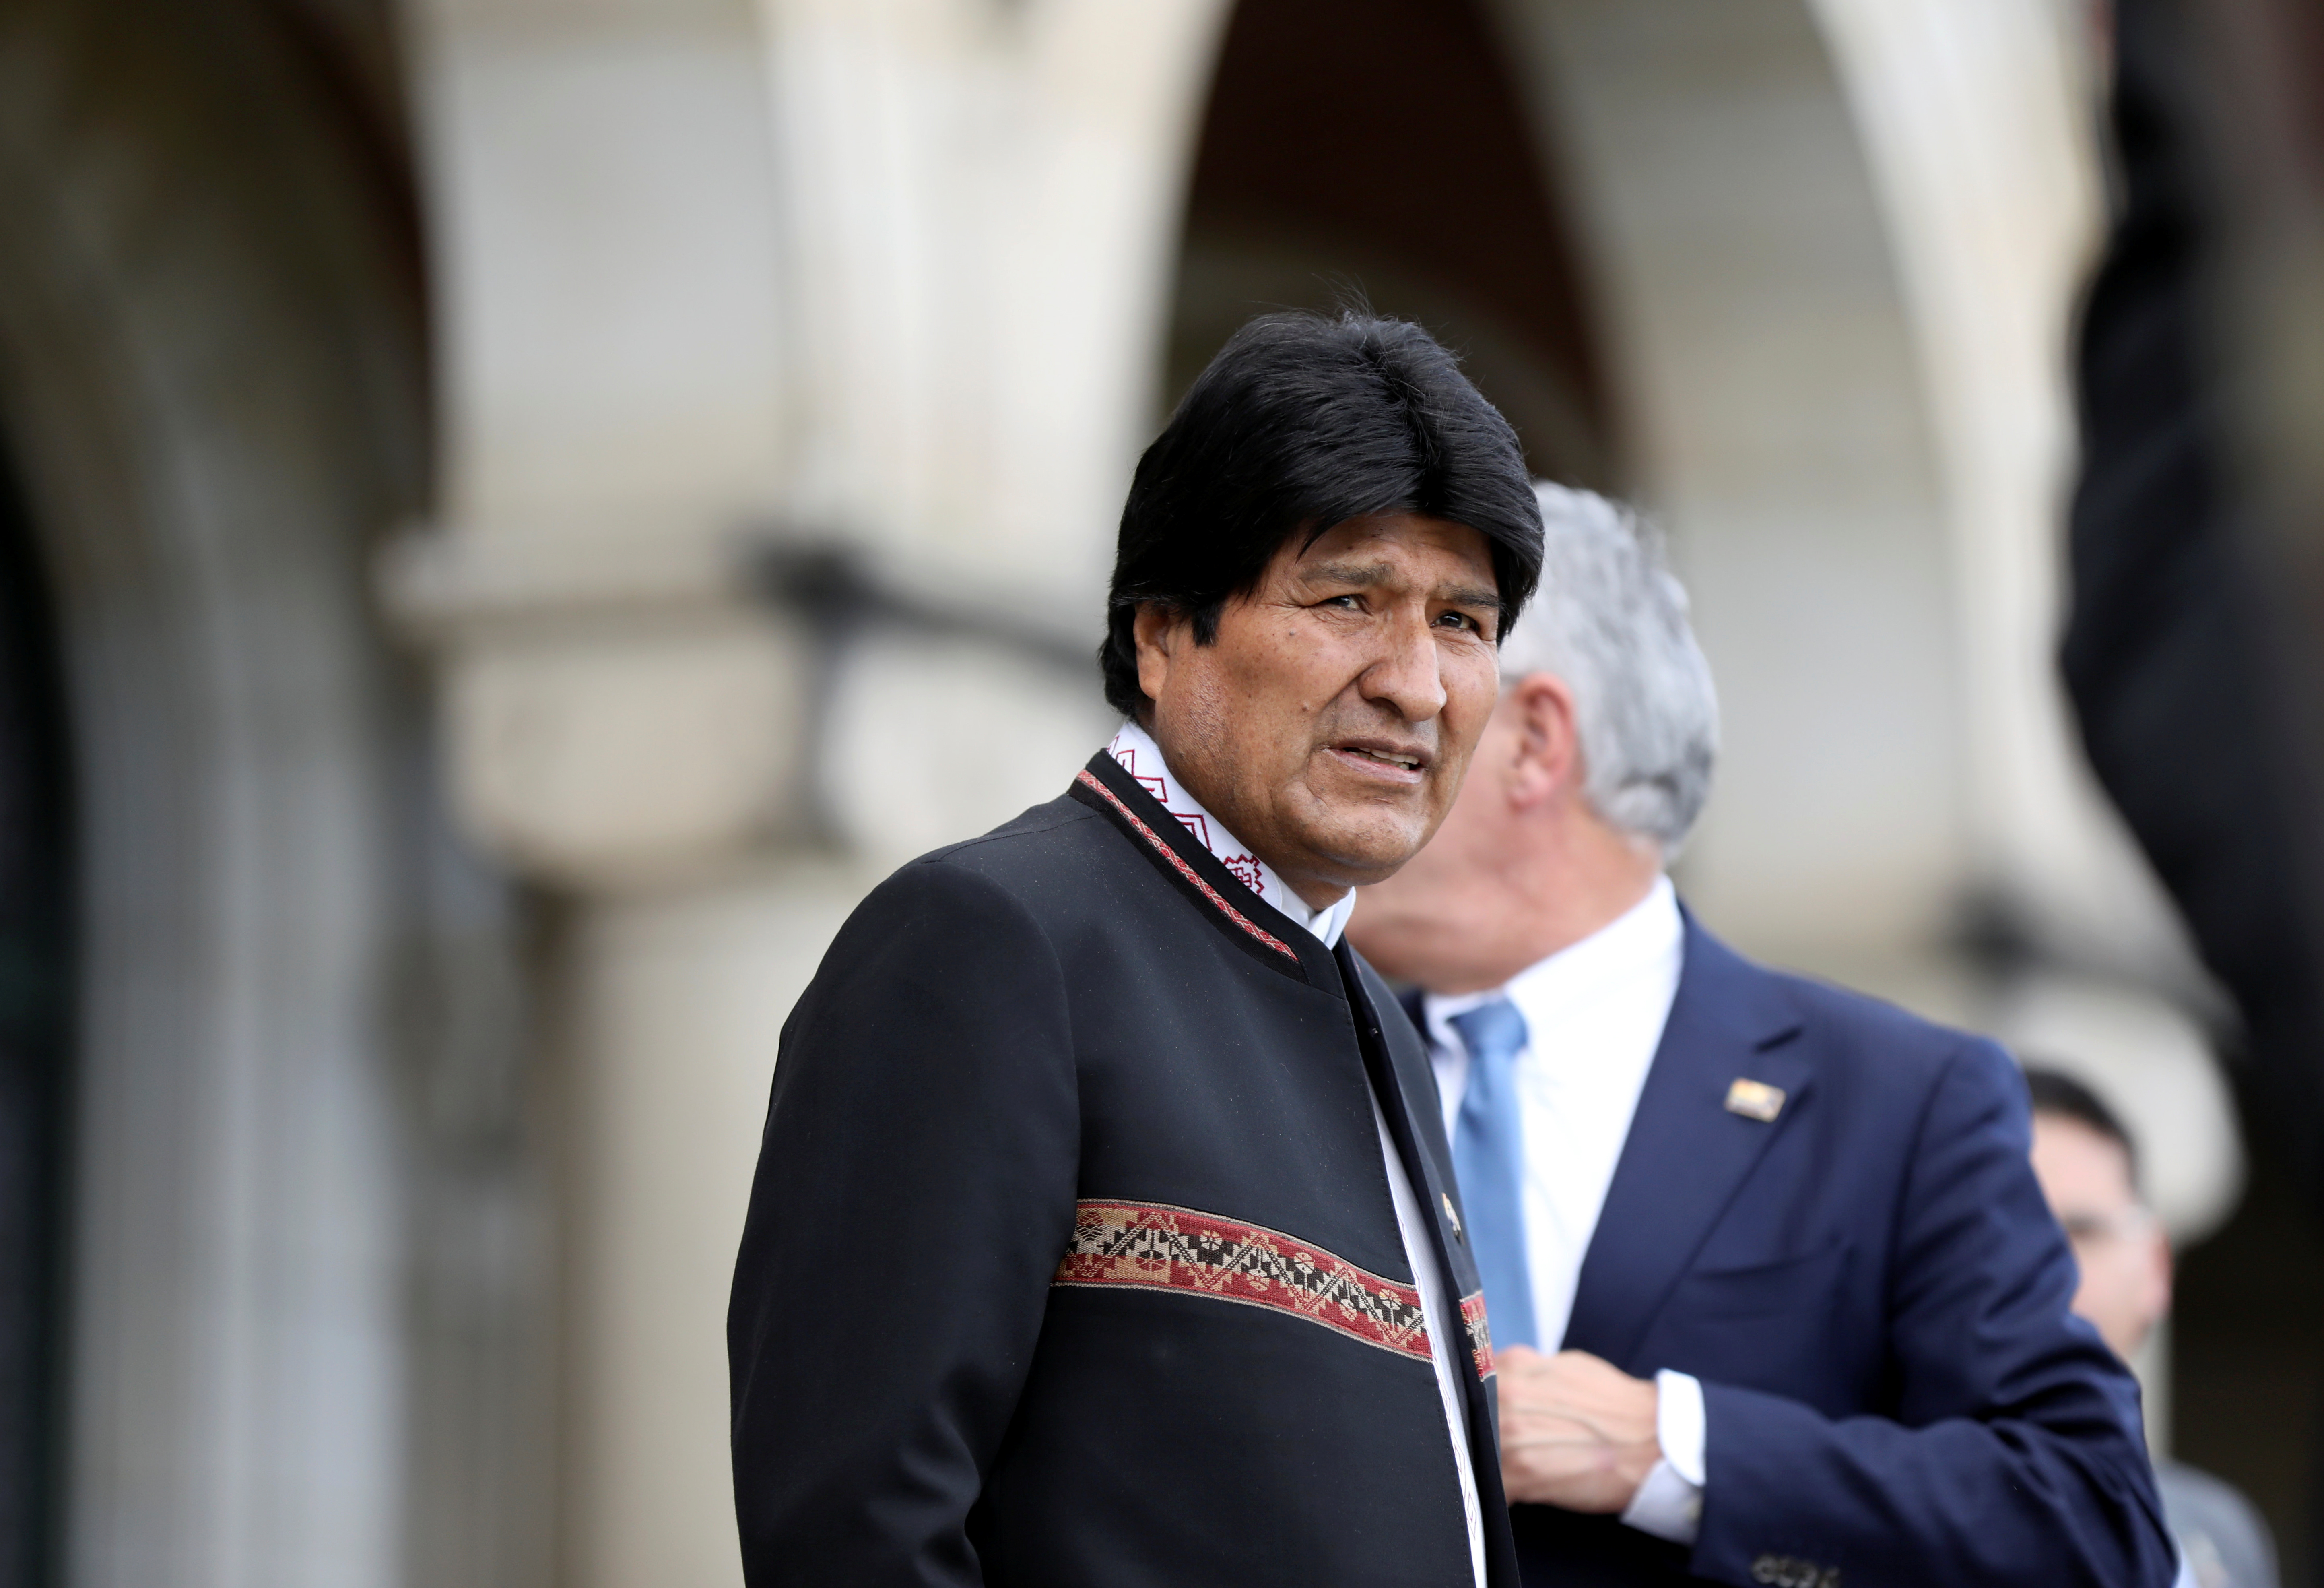 Ente electoral de Bolivia rechaza impugnaciones a la candidatura inconstitucional de Evo